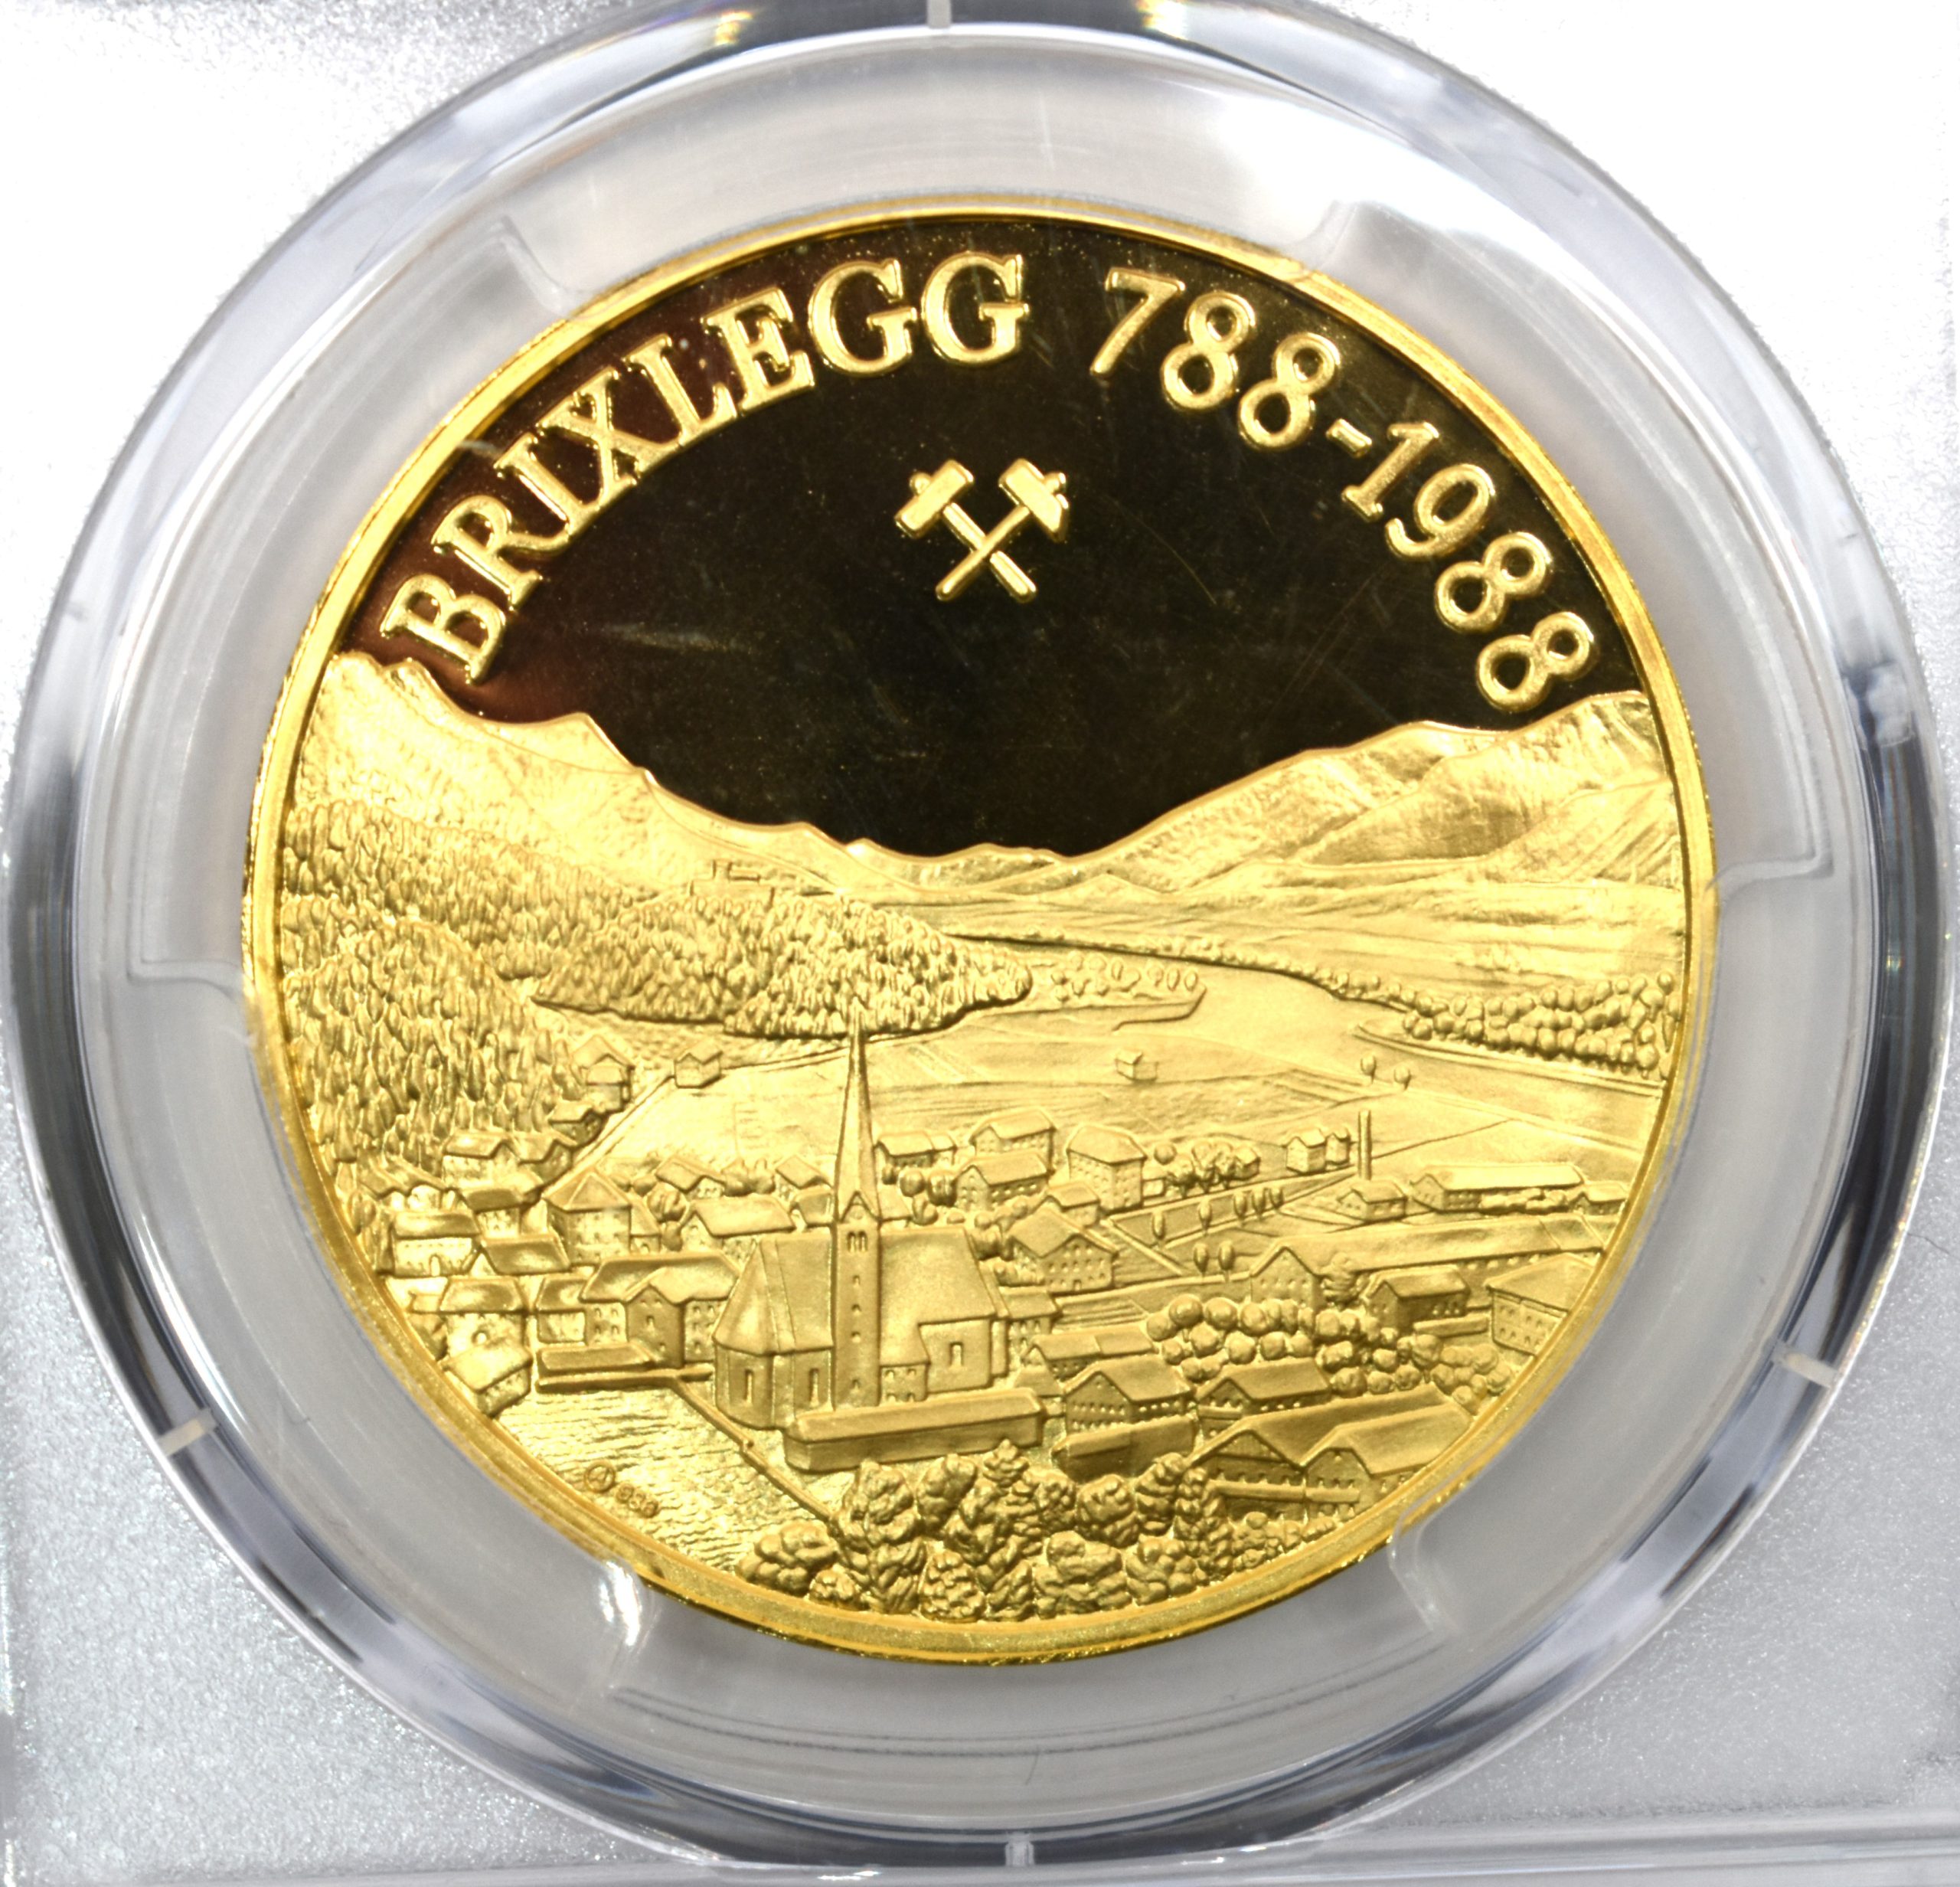 1988年 ブリックレック 1200年記念 都市景観 9ダカット 金メダル SP68